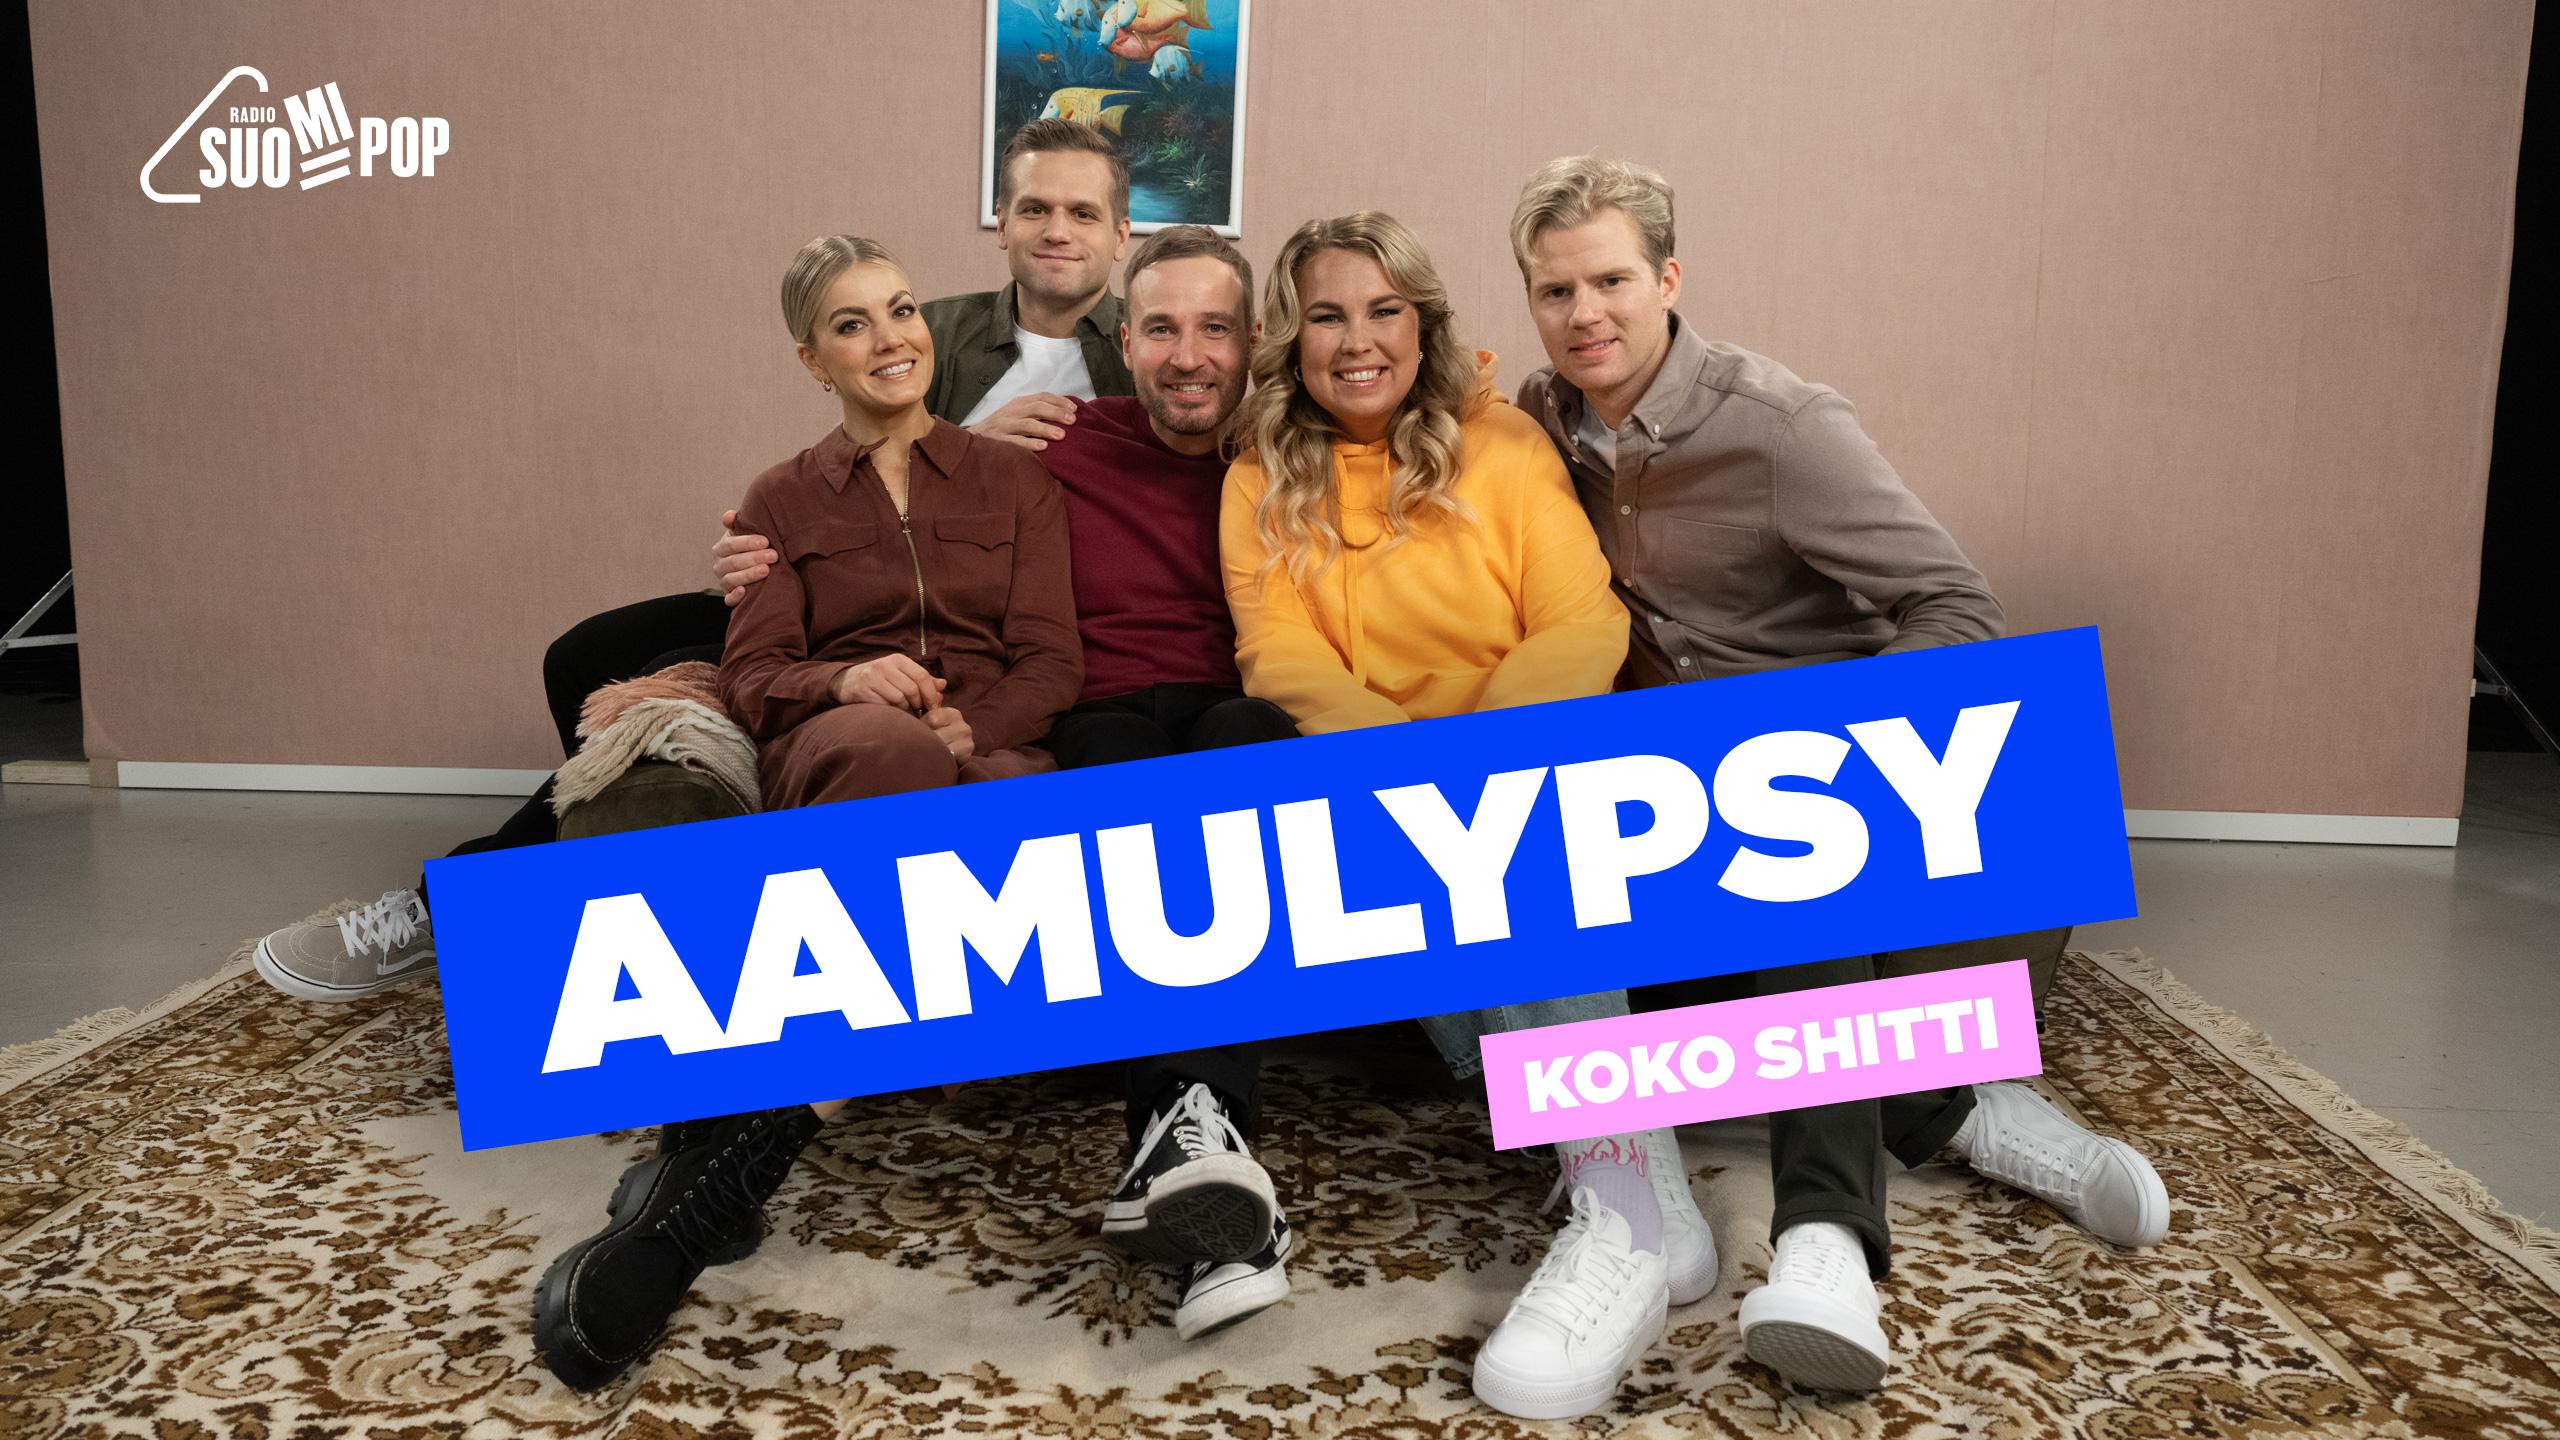 Radio Suomipopin Aamulypsy | Ruutu